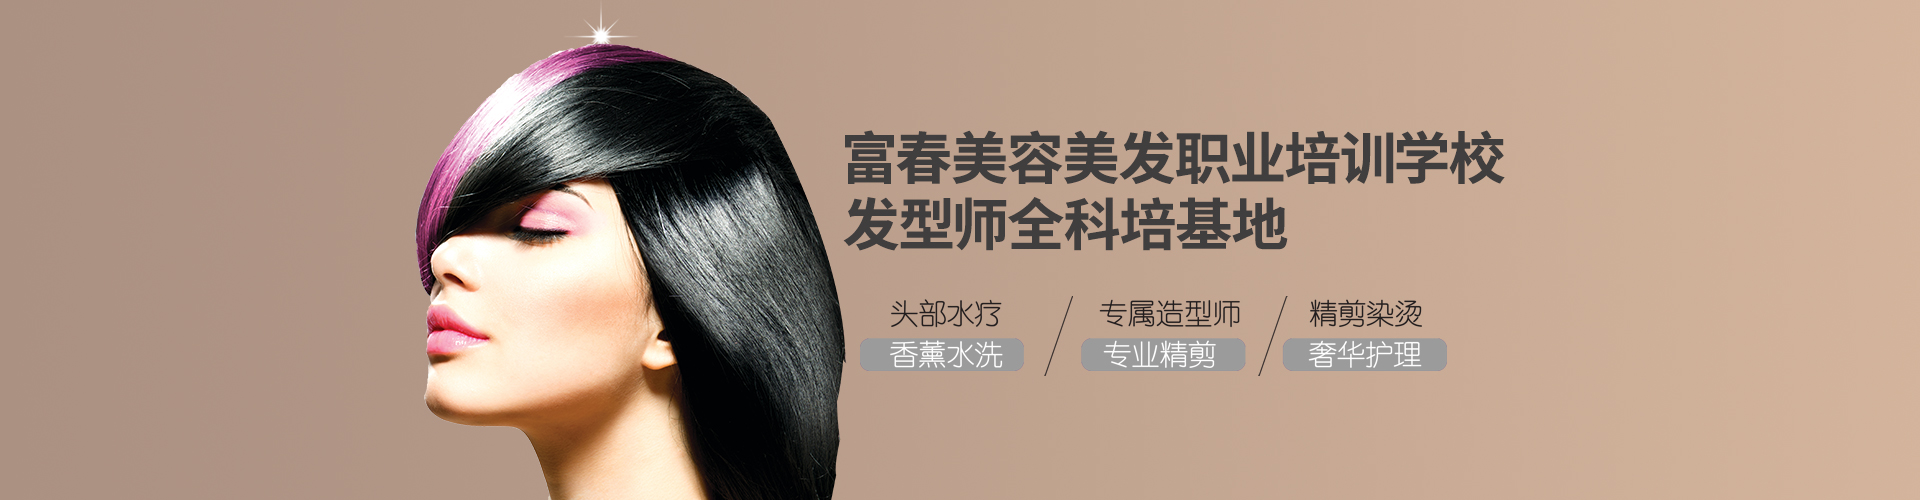 蚌埠市美容美发行业协会举办2023年美容师第一期技能等级认定考核-行业资讯-蚌埠市美容美发行业协会-蚌埠美容美发-蚌埠美发协会